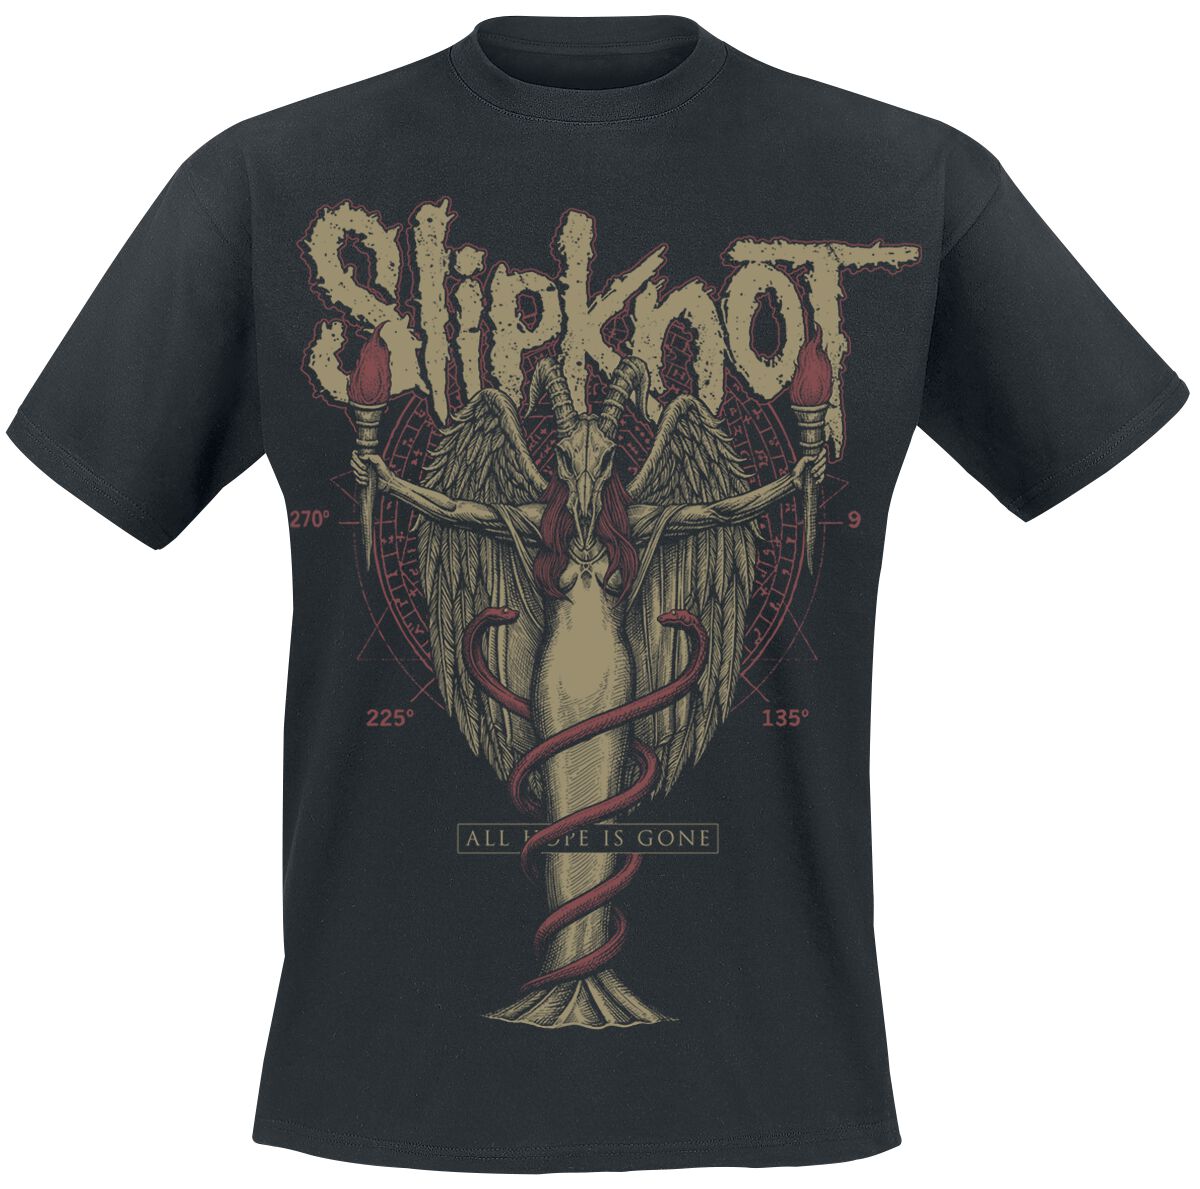 Slipknot T-Shirt - Angels Lie - S bis 5XL - für Männer - Größe 5XL - schwarz  - Lizenziertes Merchandise!